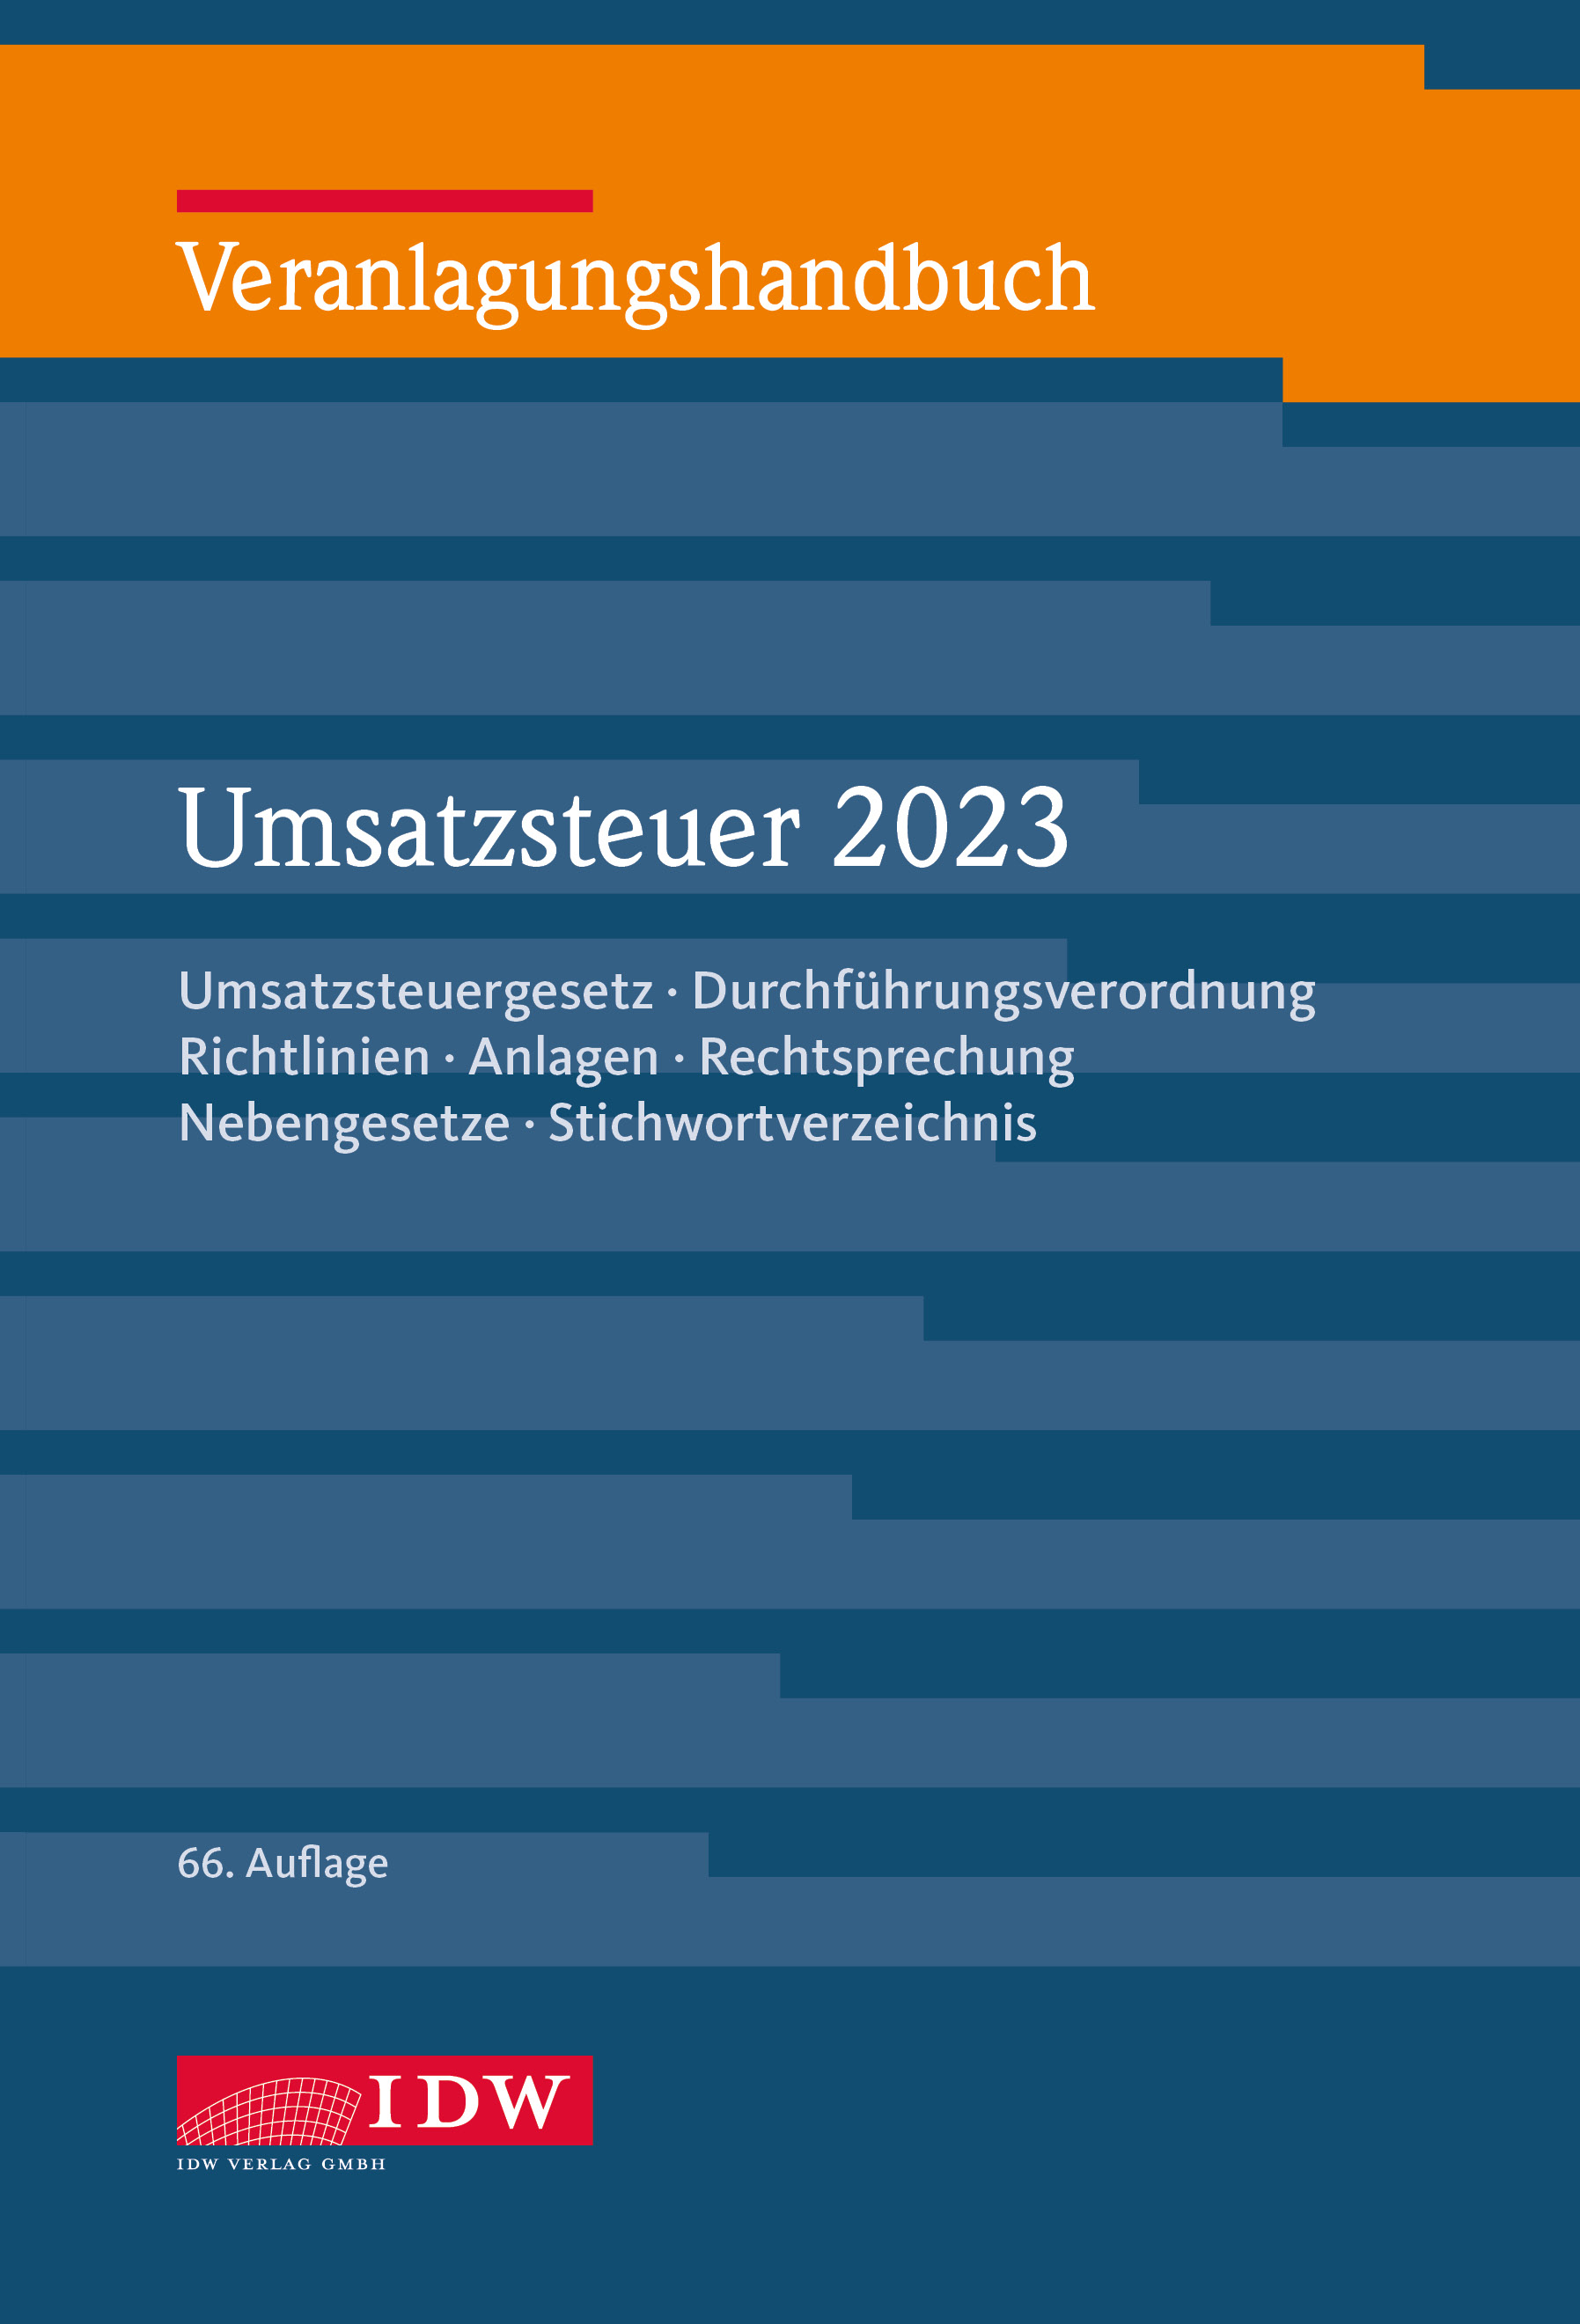 Veranlagungshandbuch Umsatzsteuer 2023